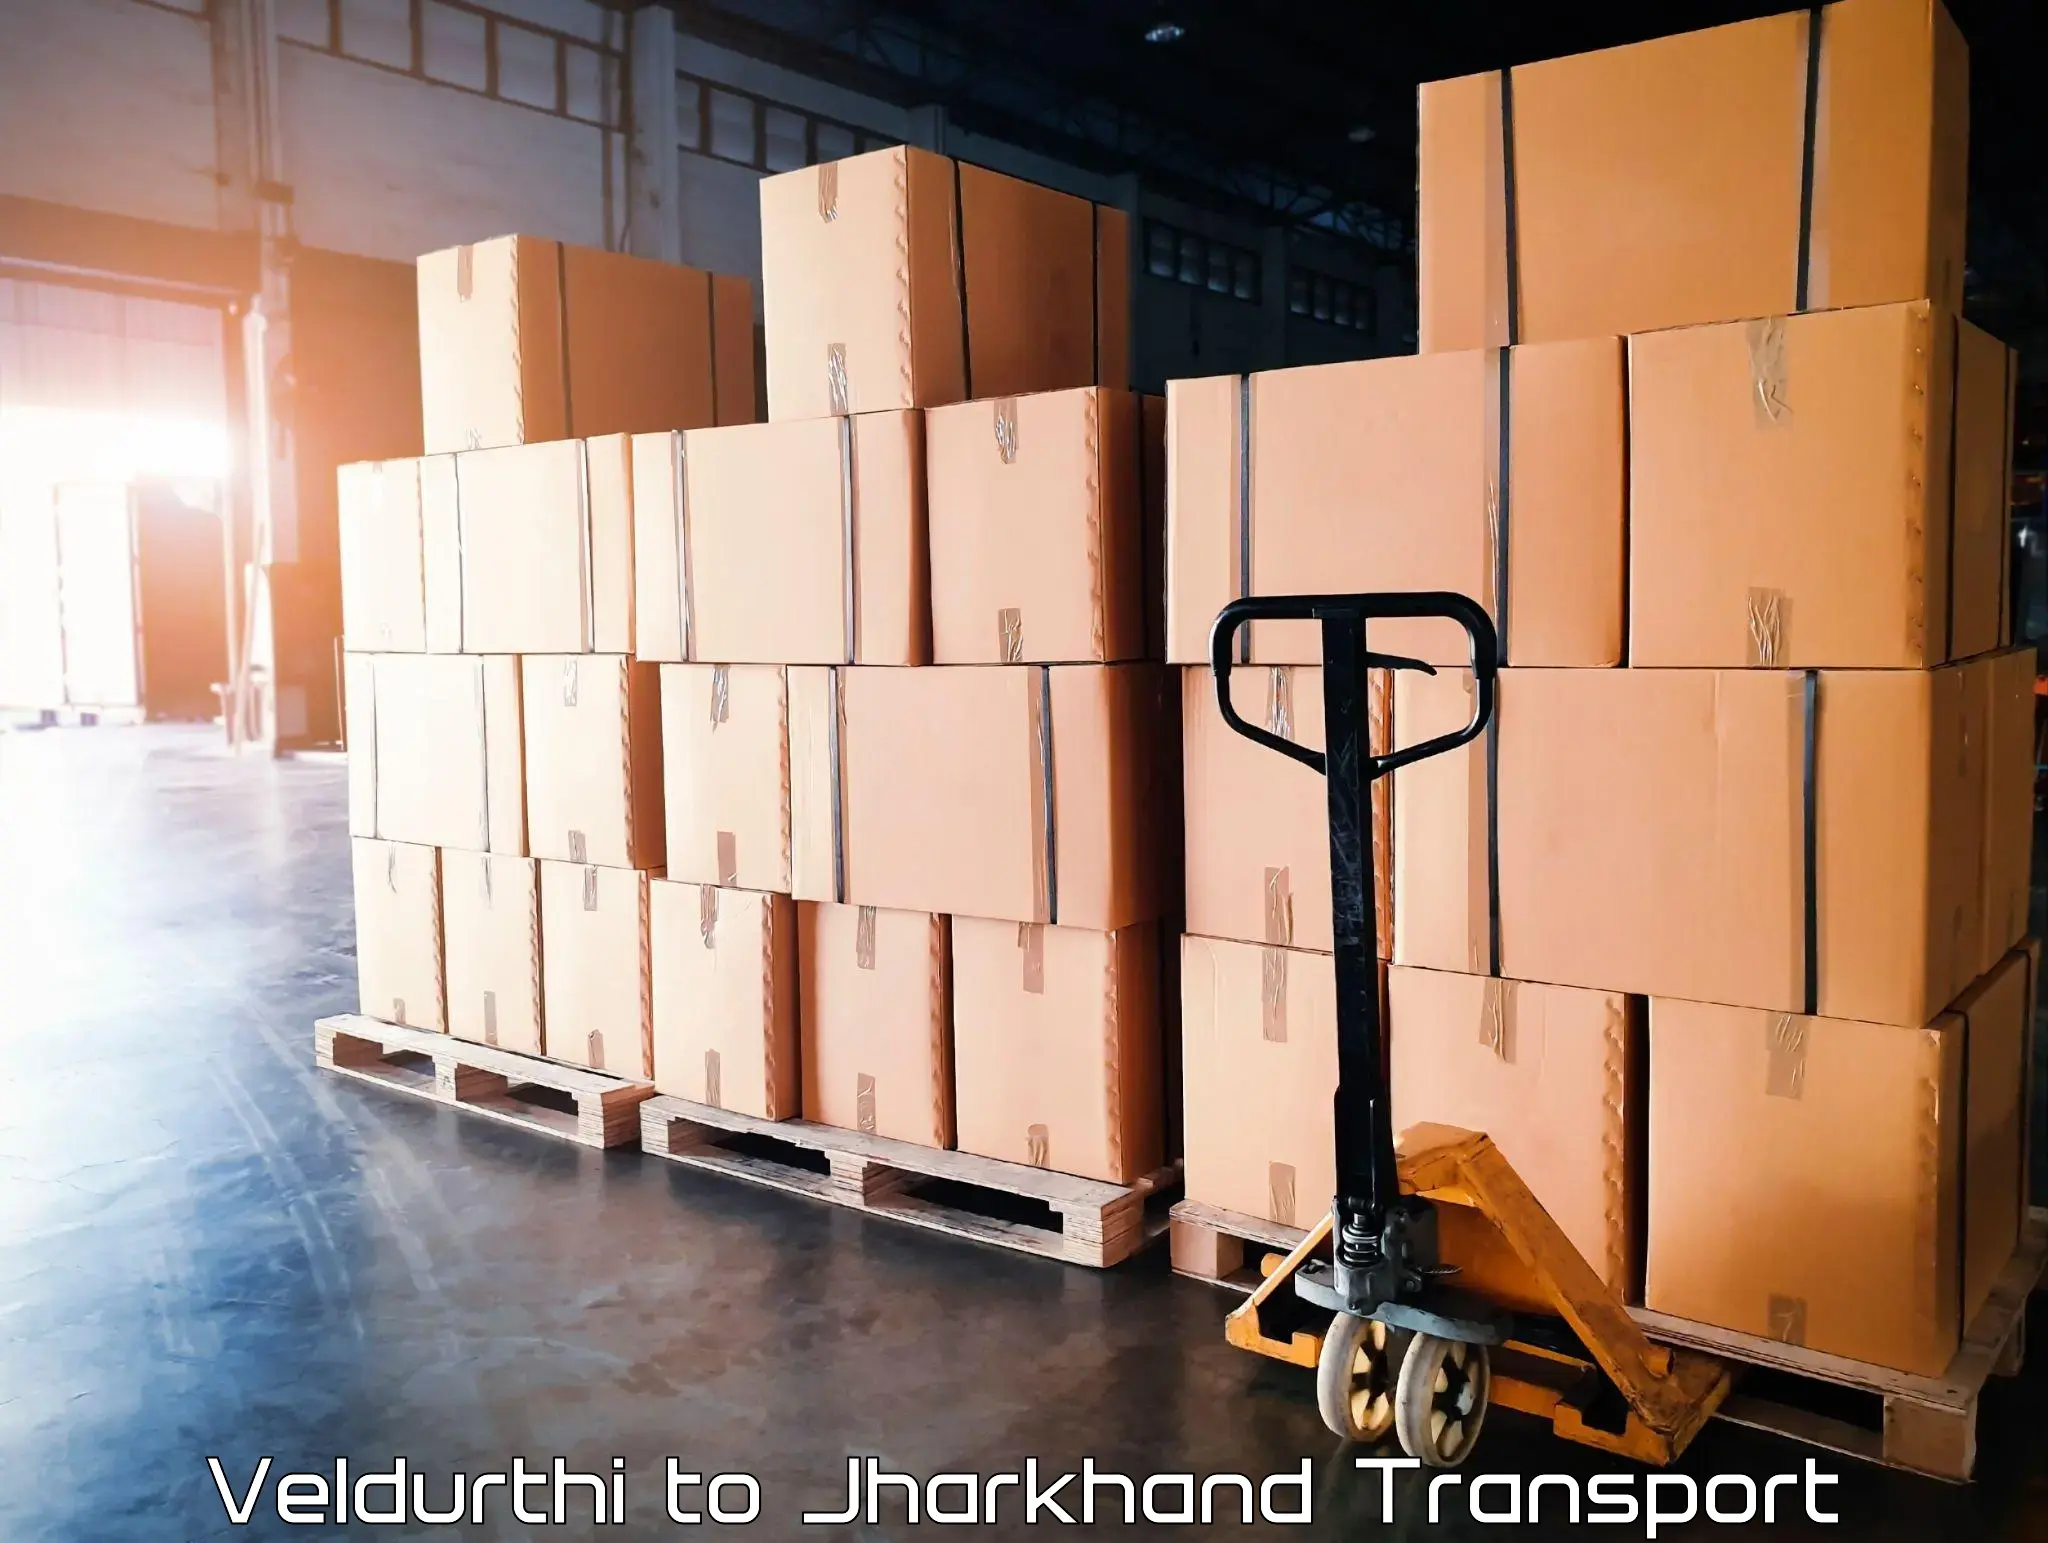 Cargo transport services Veldurthi to Dhalbhumgarh